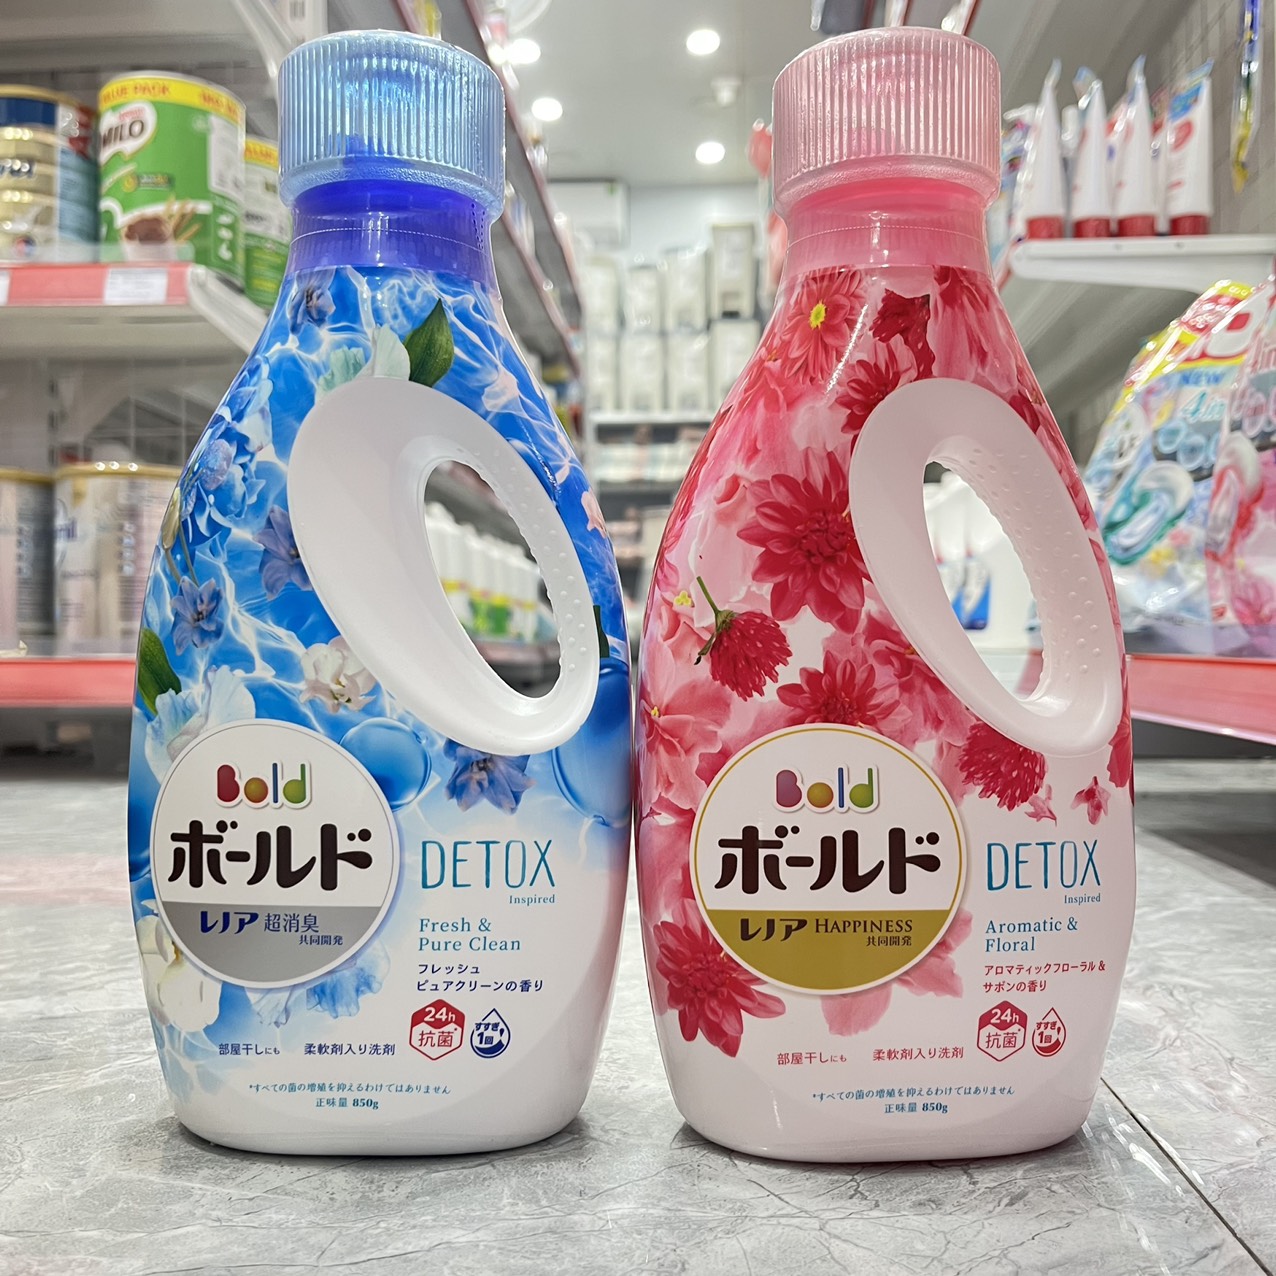 Nước giặt xả cao cấp Gel Ball Bold Detox chai 850g - Nhật Bản